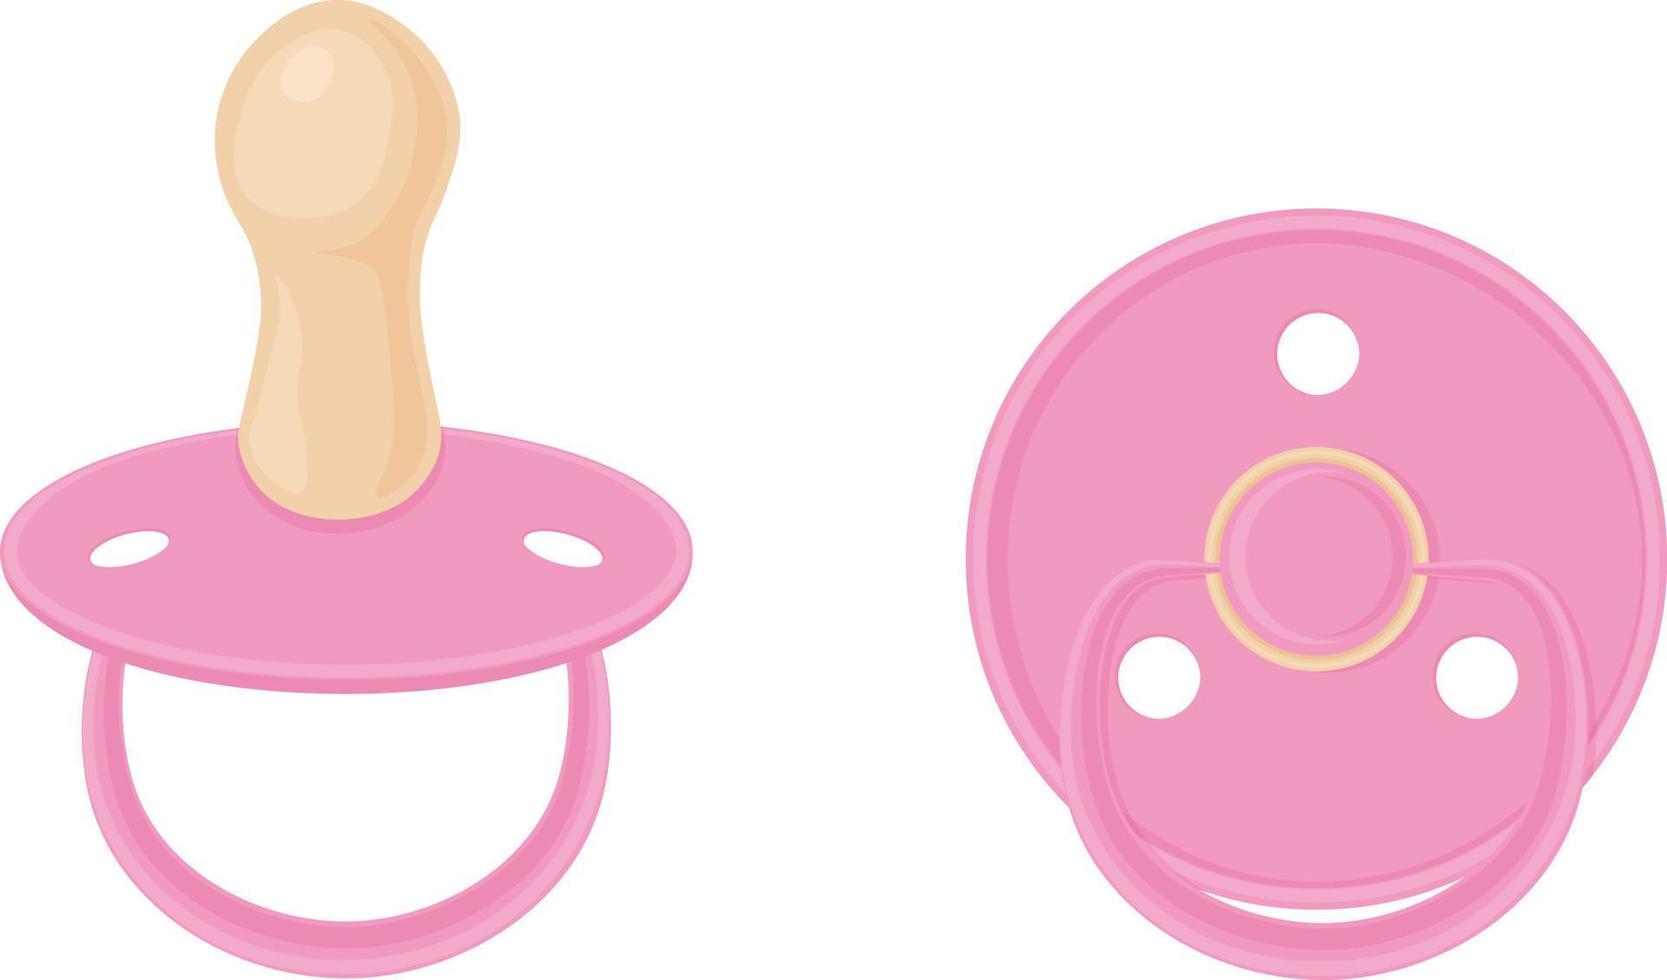 Las tetinas del chupete del bebé son rosadas. pezones de bebé, vista lateral y vista inferior. ilustración vectorial aislada en un fondo blanco vector